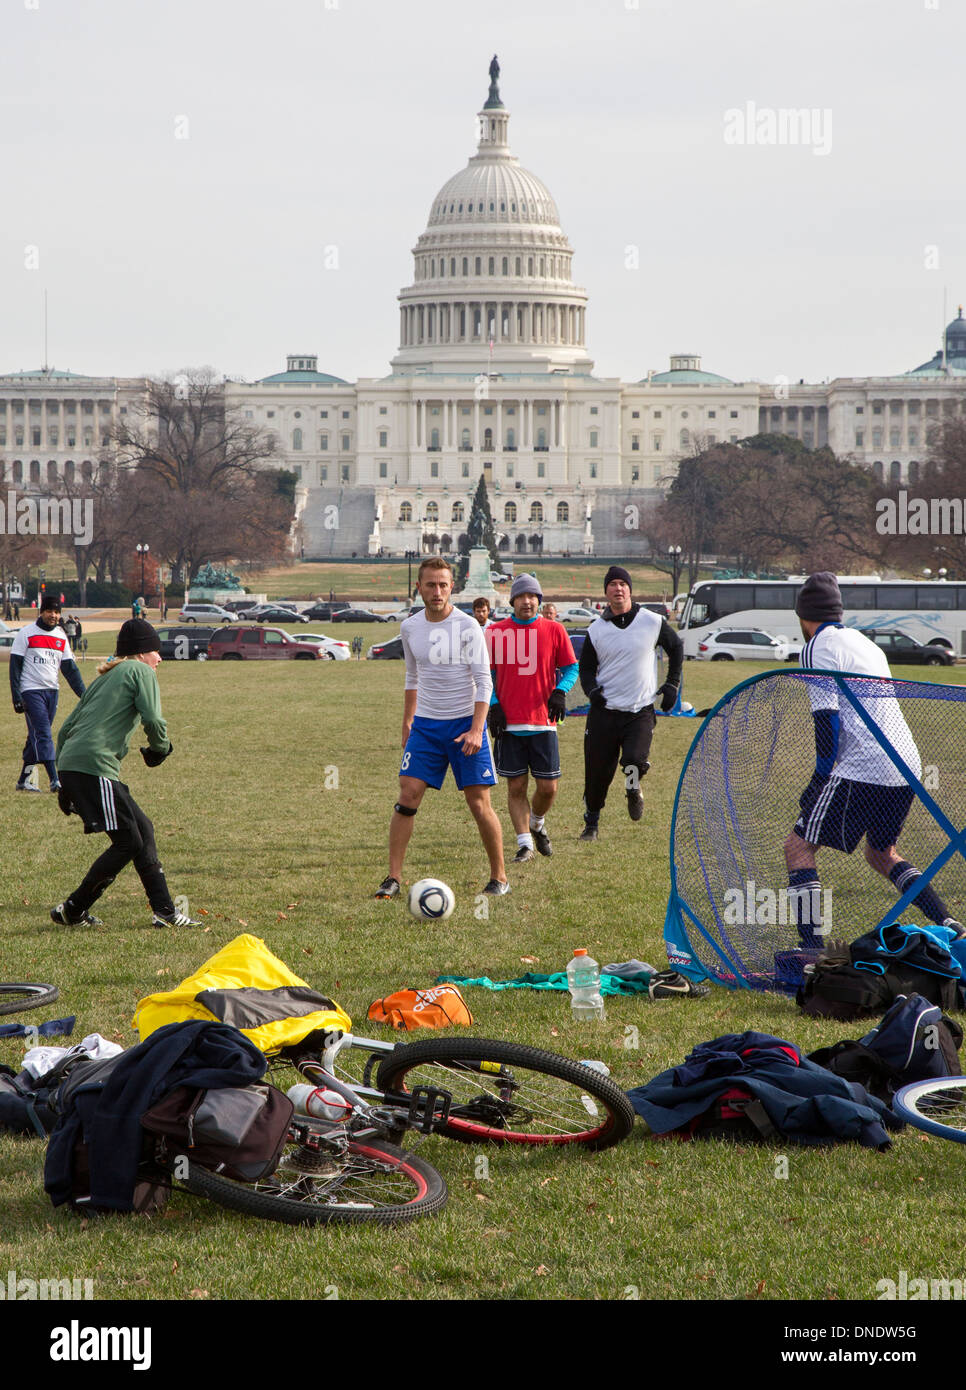 Washington, DC - Männer spielen eine informelle Fußballspiel auf der National Mall in der Nähe des Kapitols. Stockfoto